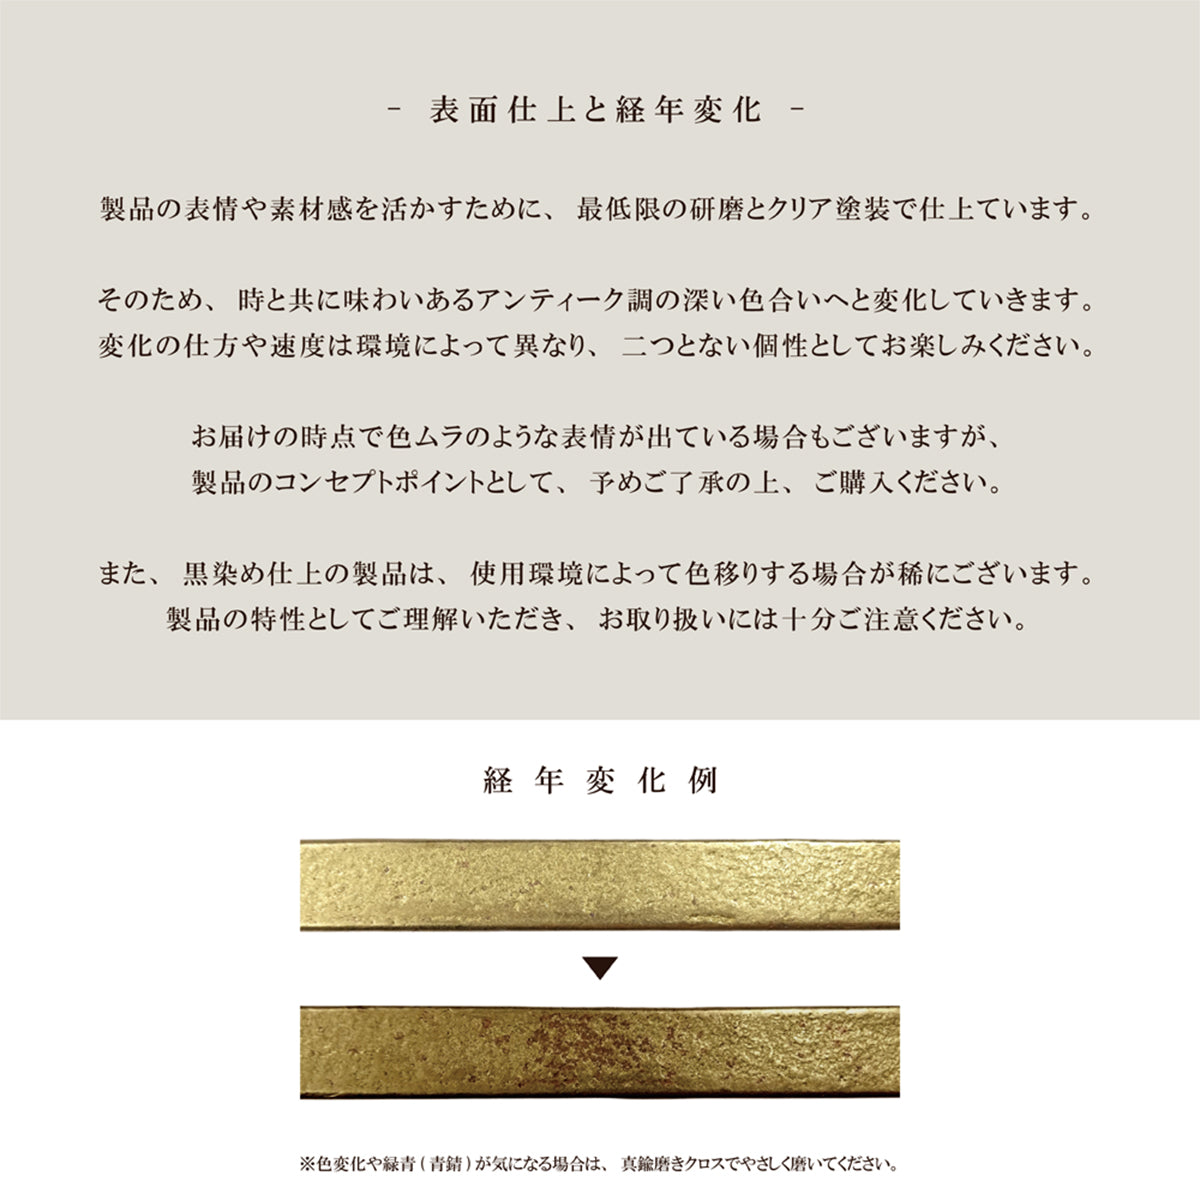 Brass Casting 真鍮鋳物 タオル掛け (T型 真鍮色 BT-200)